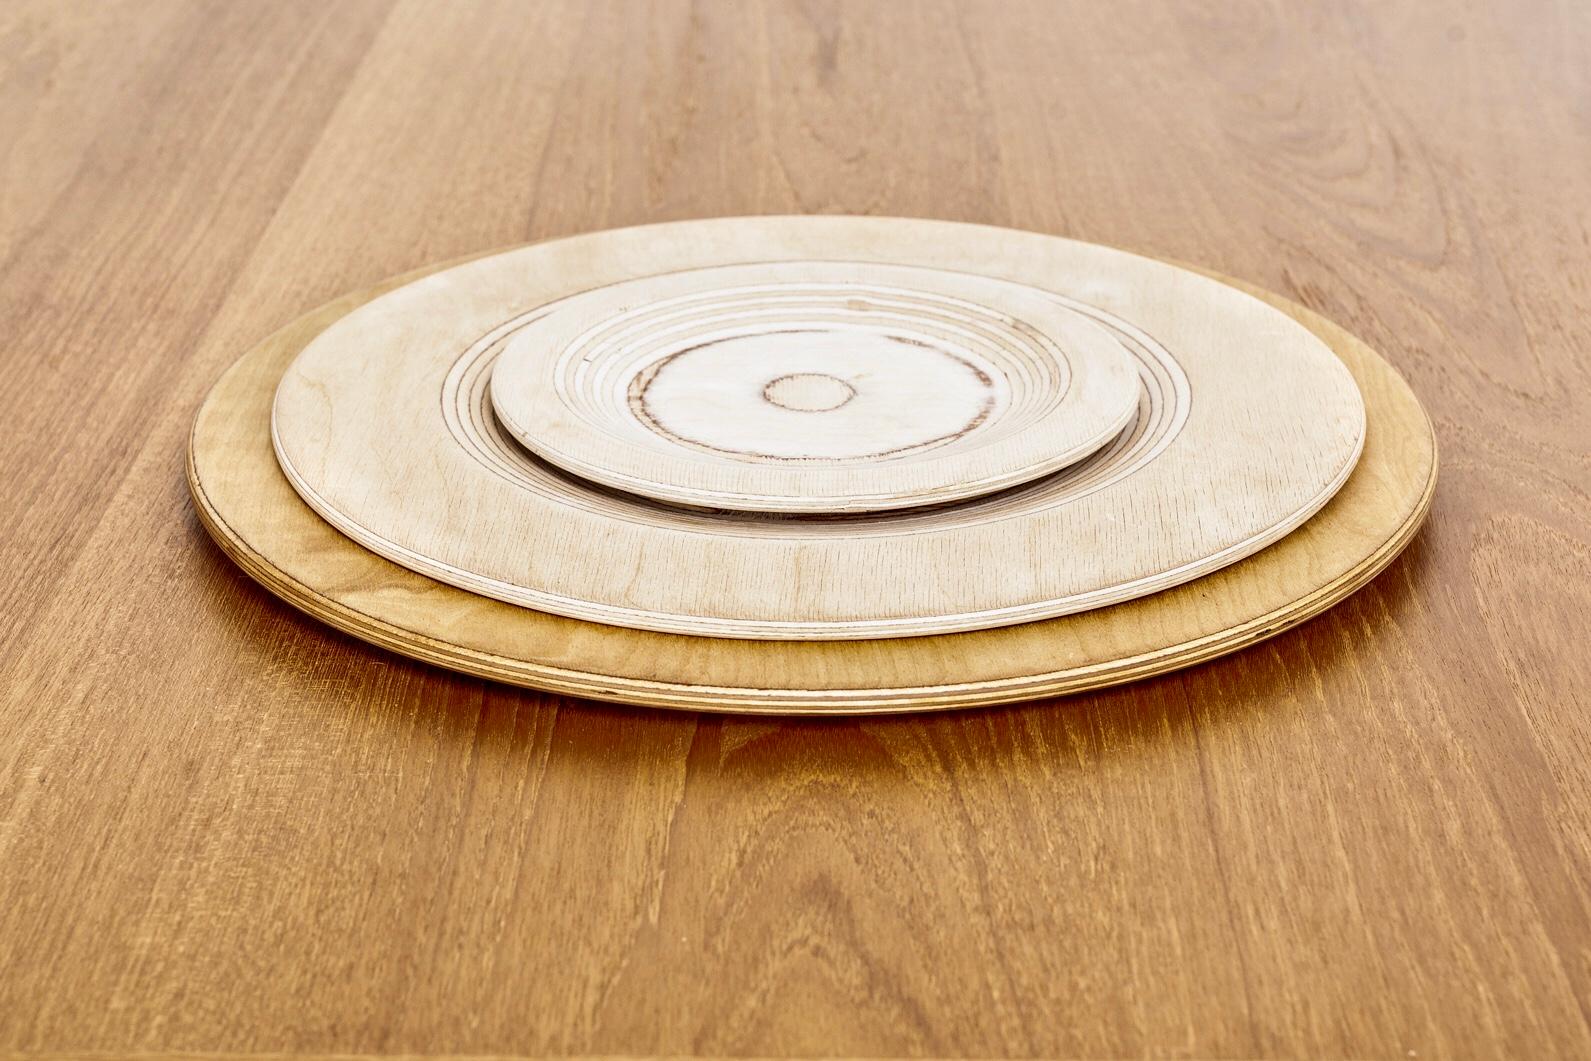 Birch Midcentury Finnish Modern Wooden Plate by Saarinen for Keuruu